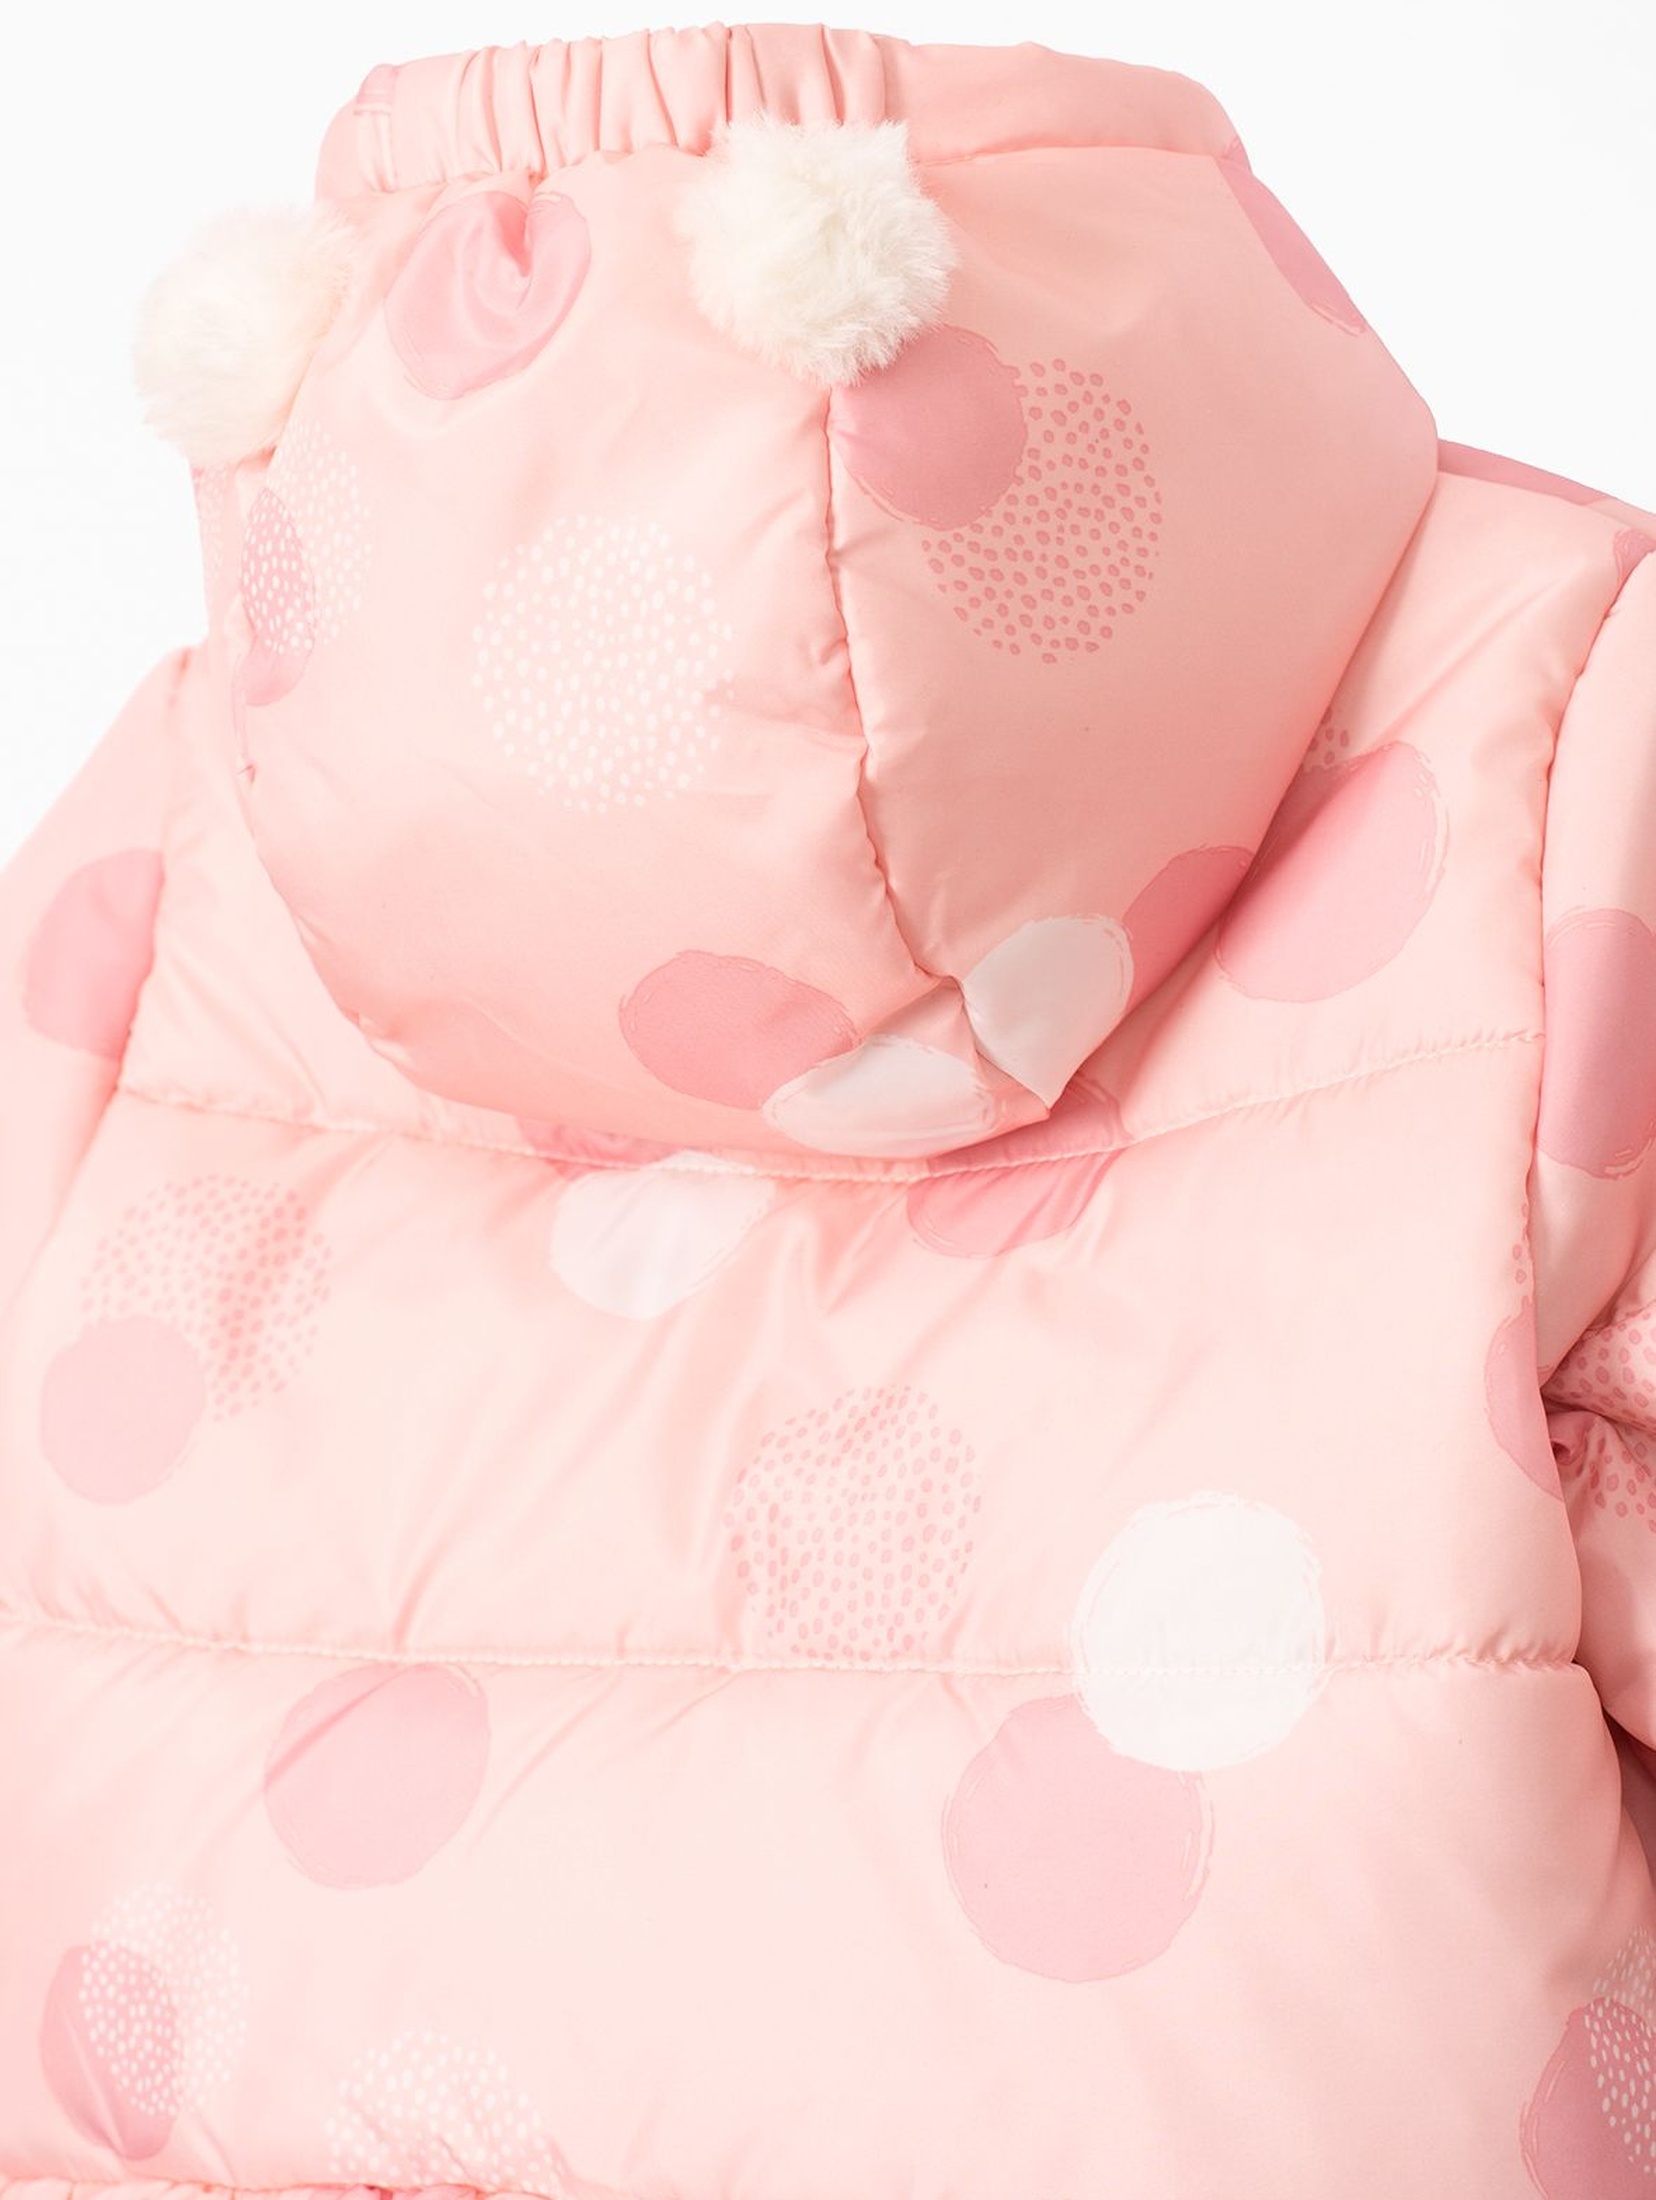 Kurtka zimowa dla niemowlaka- różowa z polarową podszewką